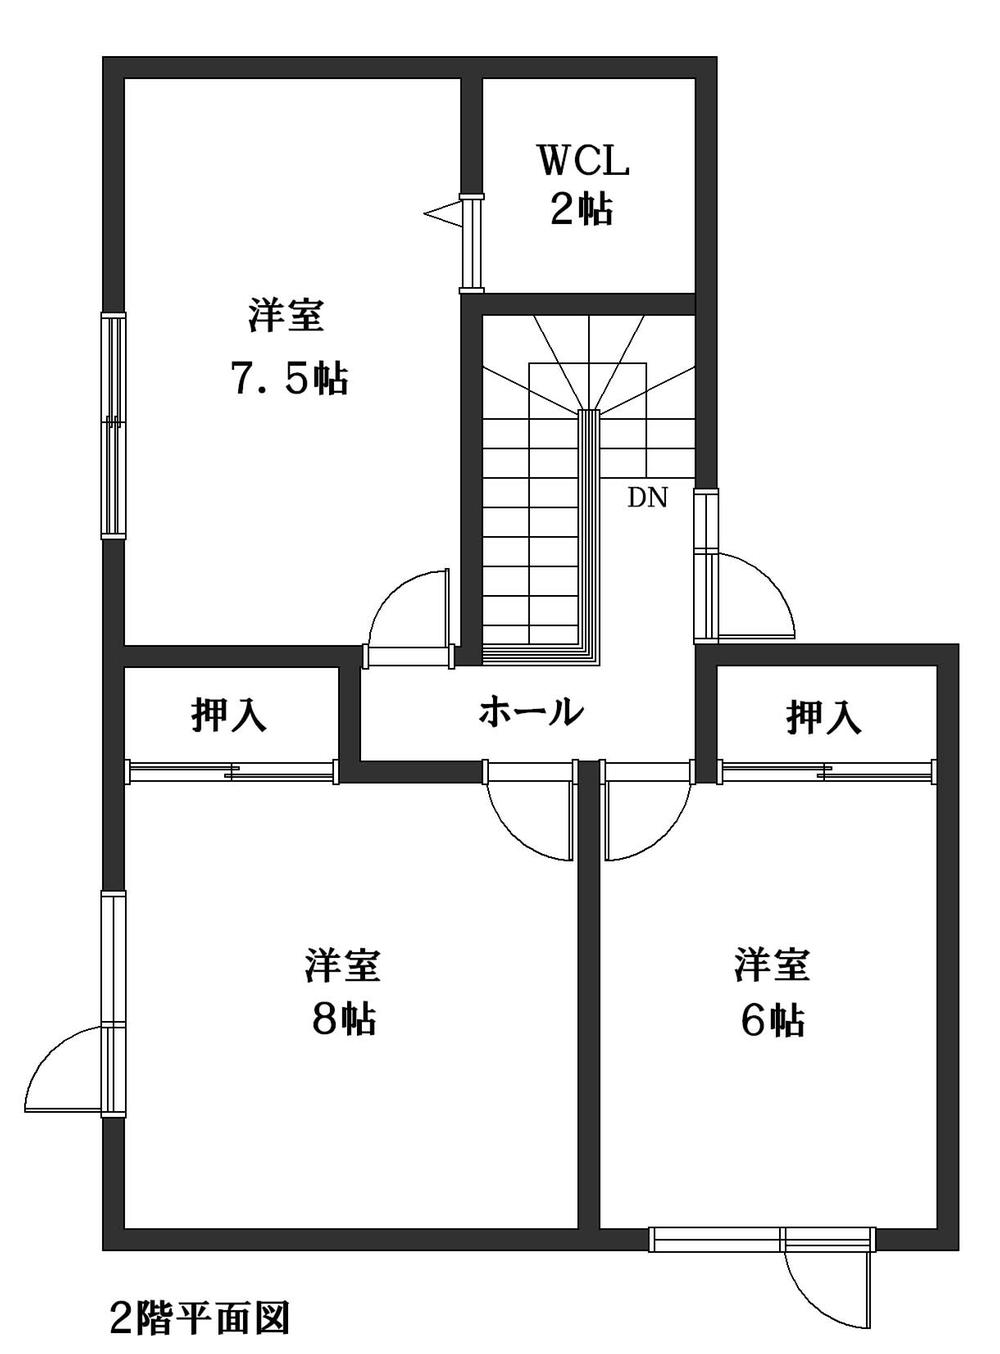 Floor plan. 7.6 million yen, 4LDK, Land area 183.29 sq m , Building area 108.75 sq m